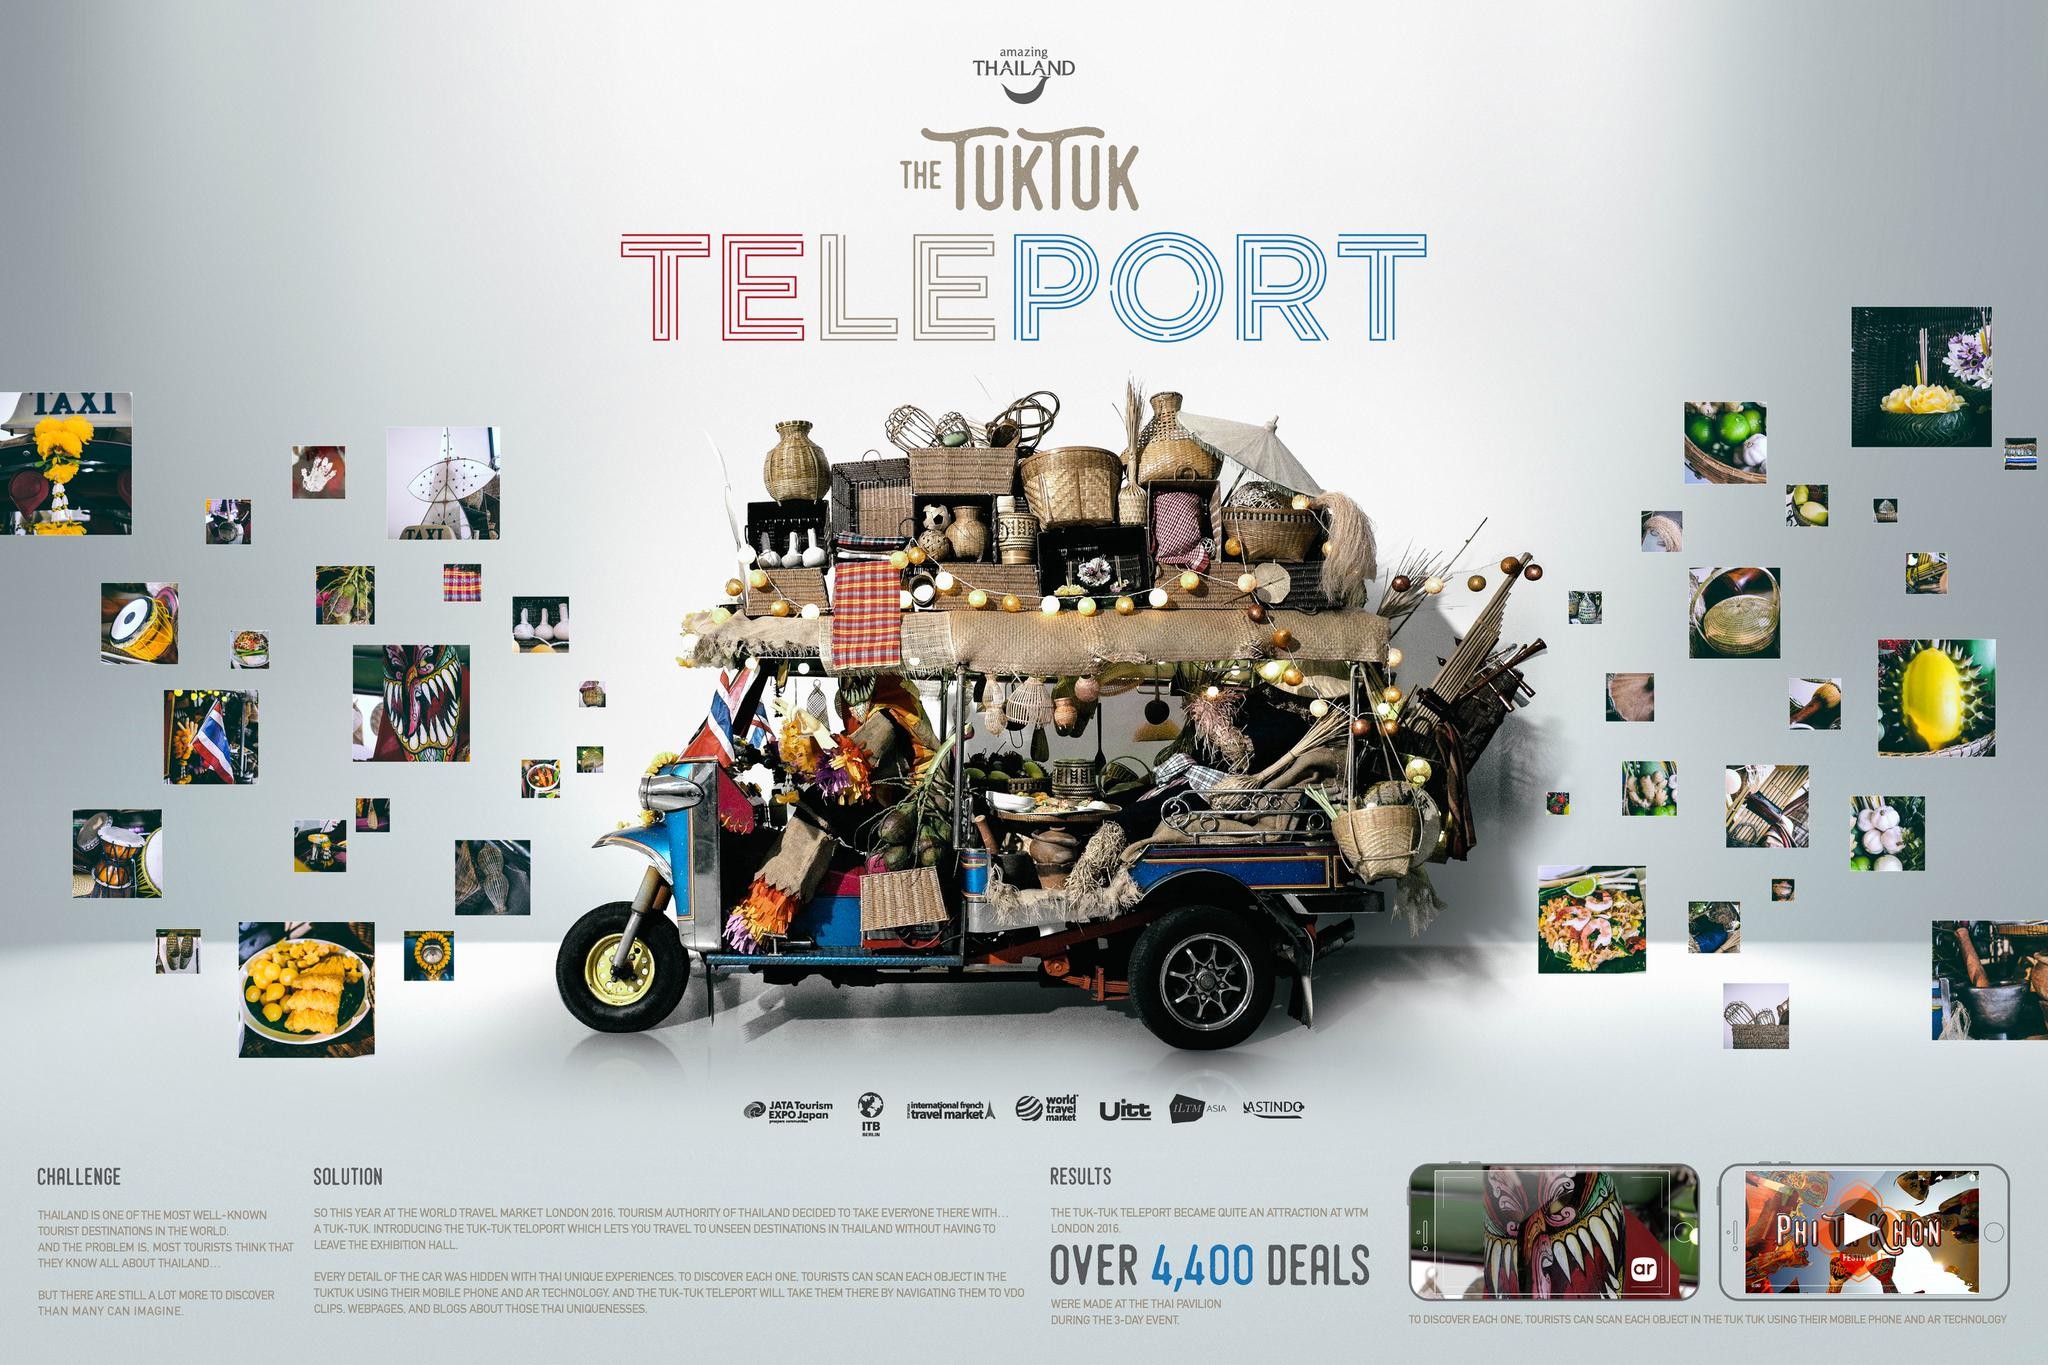 The Tuk Tuk Teleport